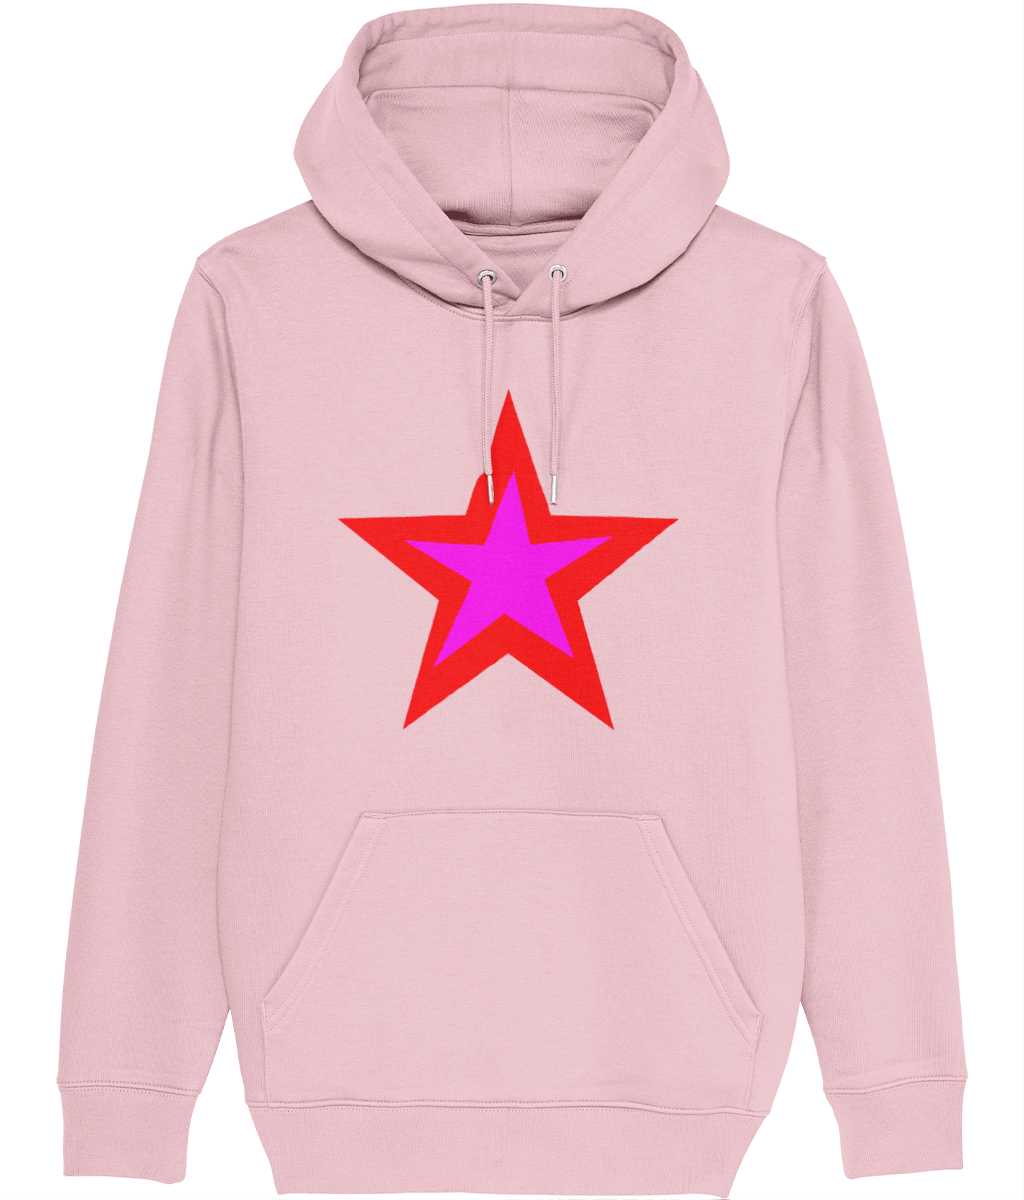 Star Play non gender hoodie Cherchez La Femme brand